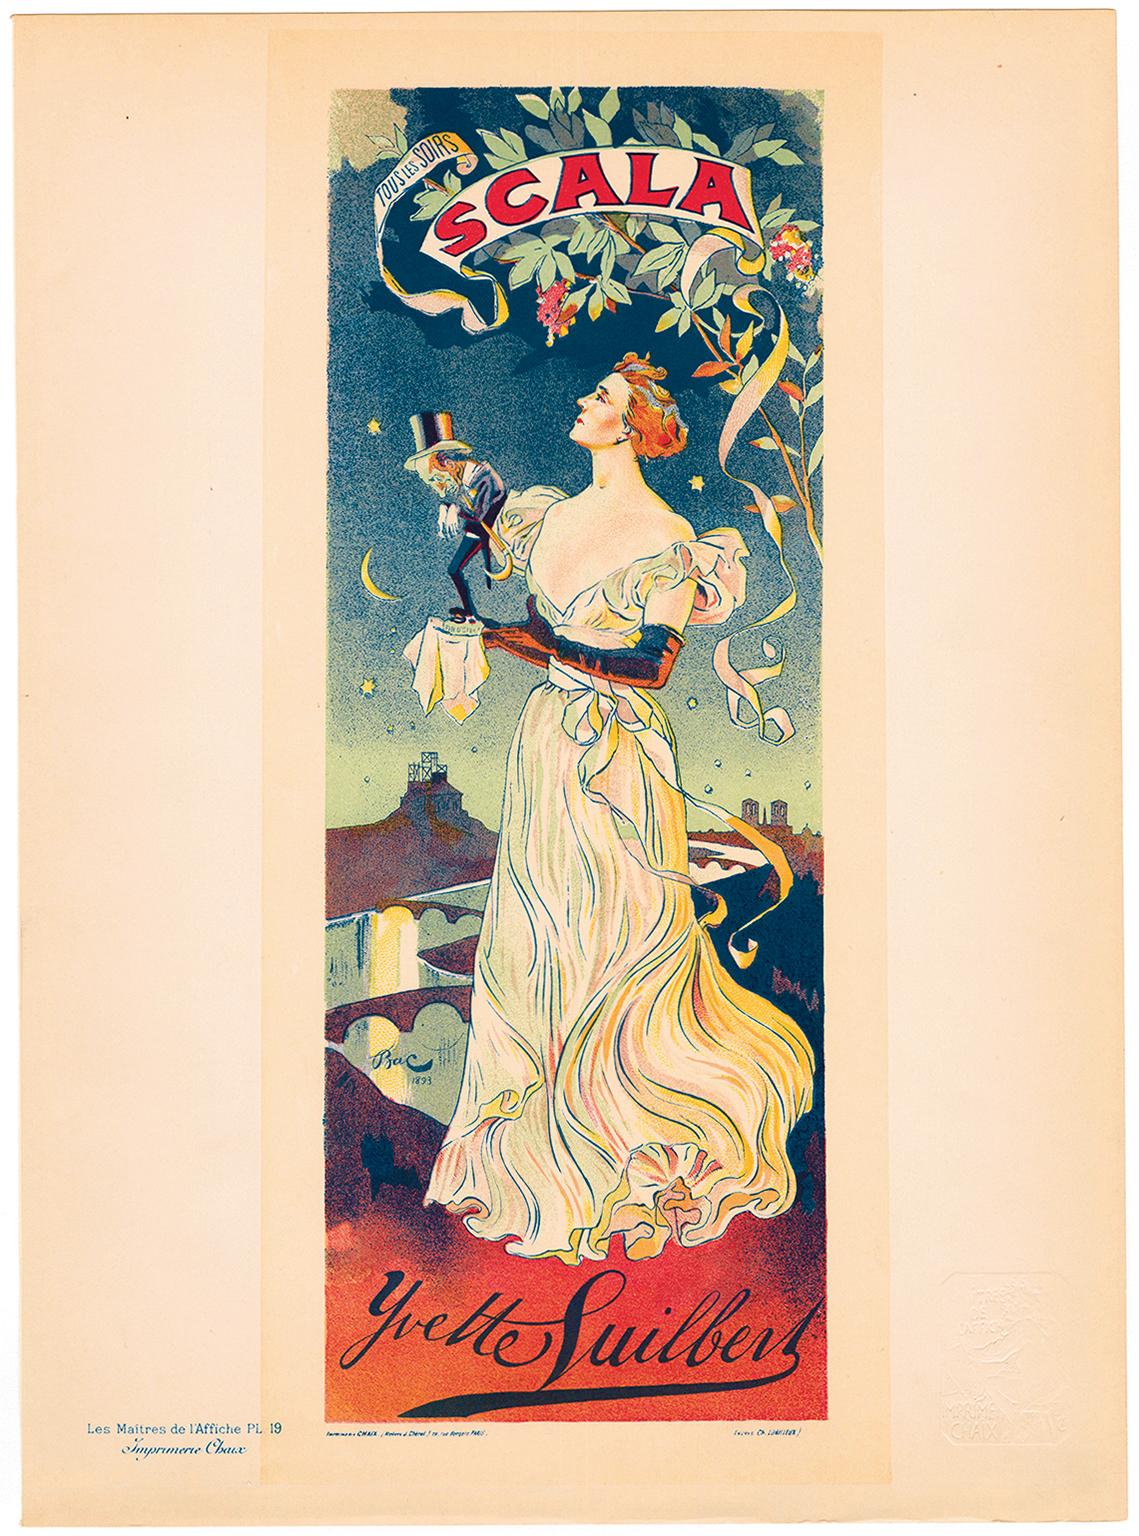 'Yvette Guilbert, SCALA' — Fin de Siècle, Paris - Print by BAC (Ferdinand Bach)